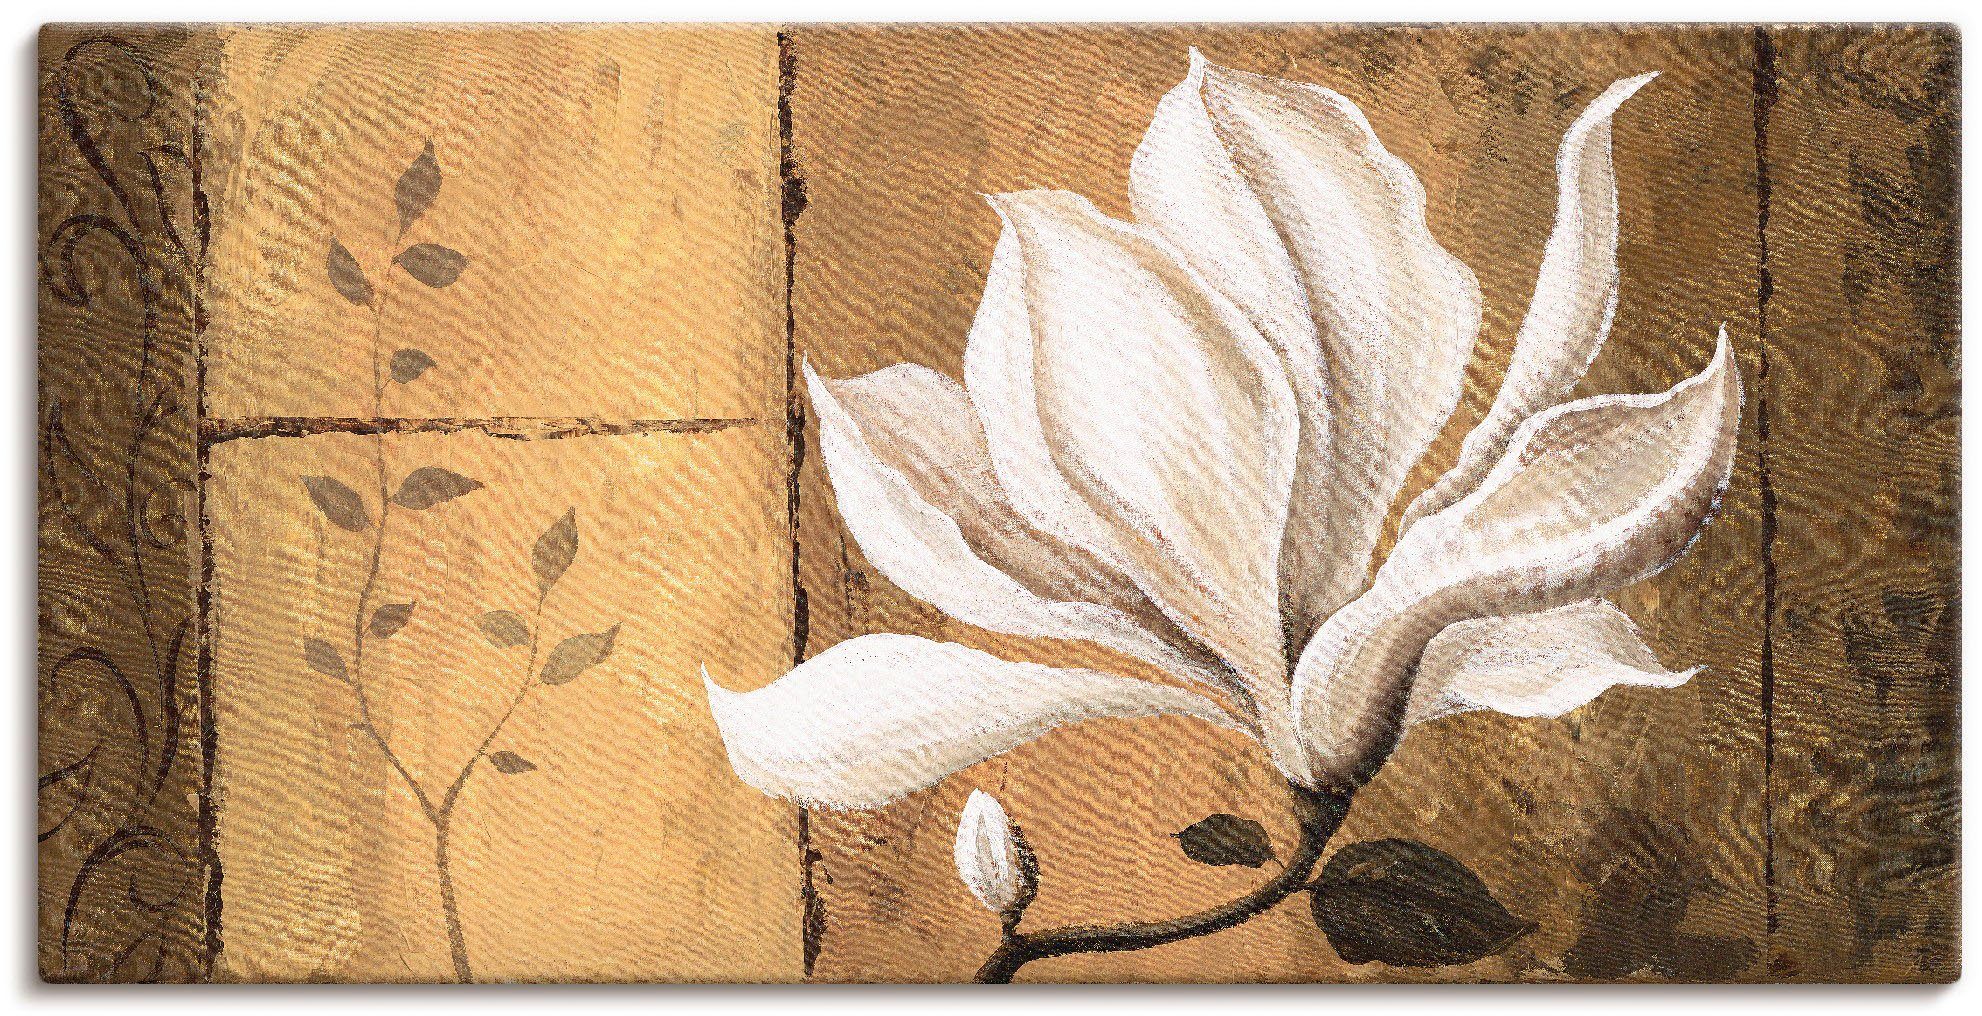 Artland Artprint Magnolia aan goud/bruin in vele afmetingen & productsoorten - artprint van aluminium / artprint voor buiten, artprint op linnen, poster, muursticker / wandfolie oo